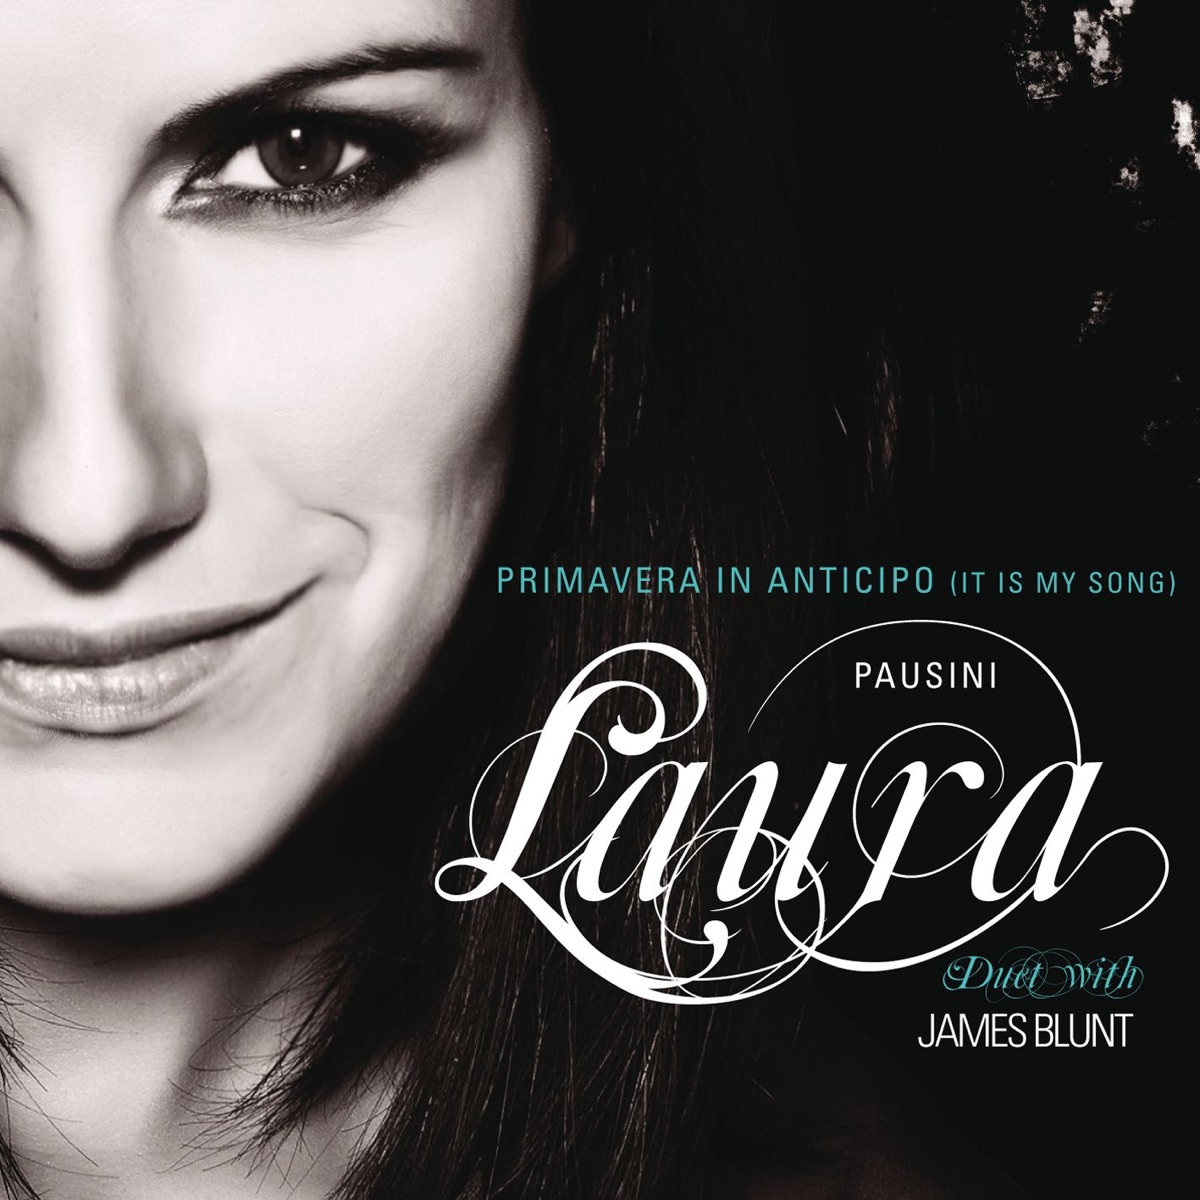 Laura Pausini & James Blunt Primavera in anticipo (It Is My Song) cover artwork